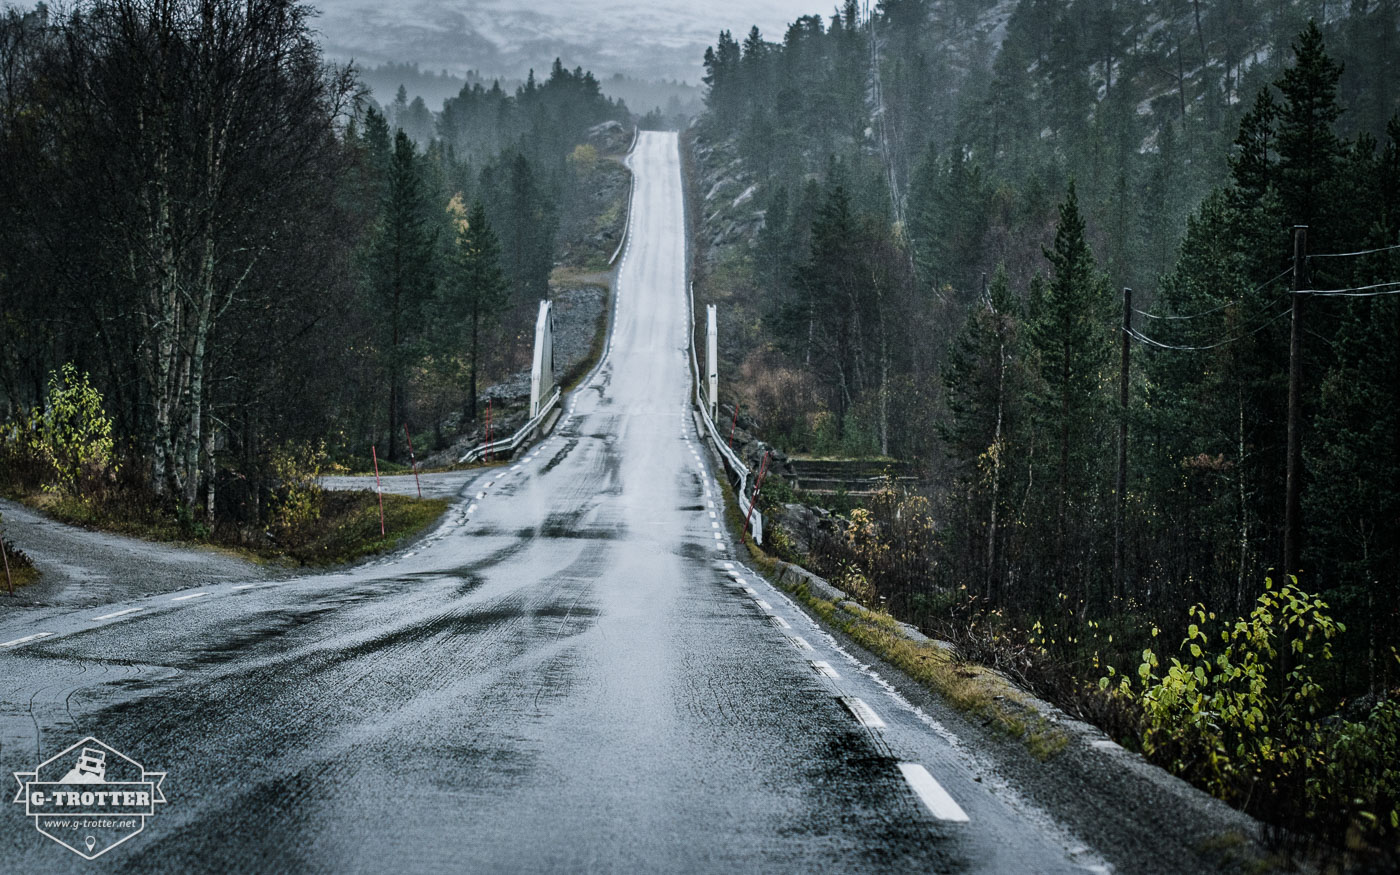 Bild 20 der Bildergalerie “Straßen von Norwegen”